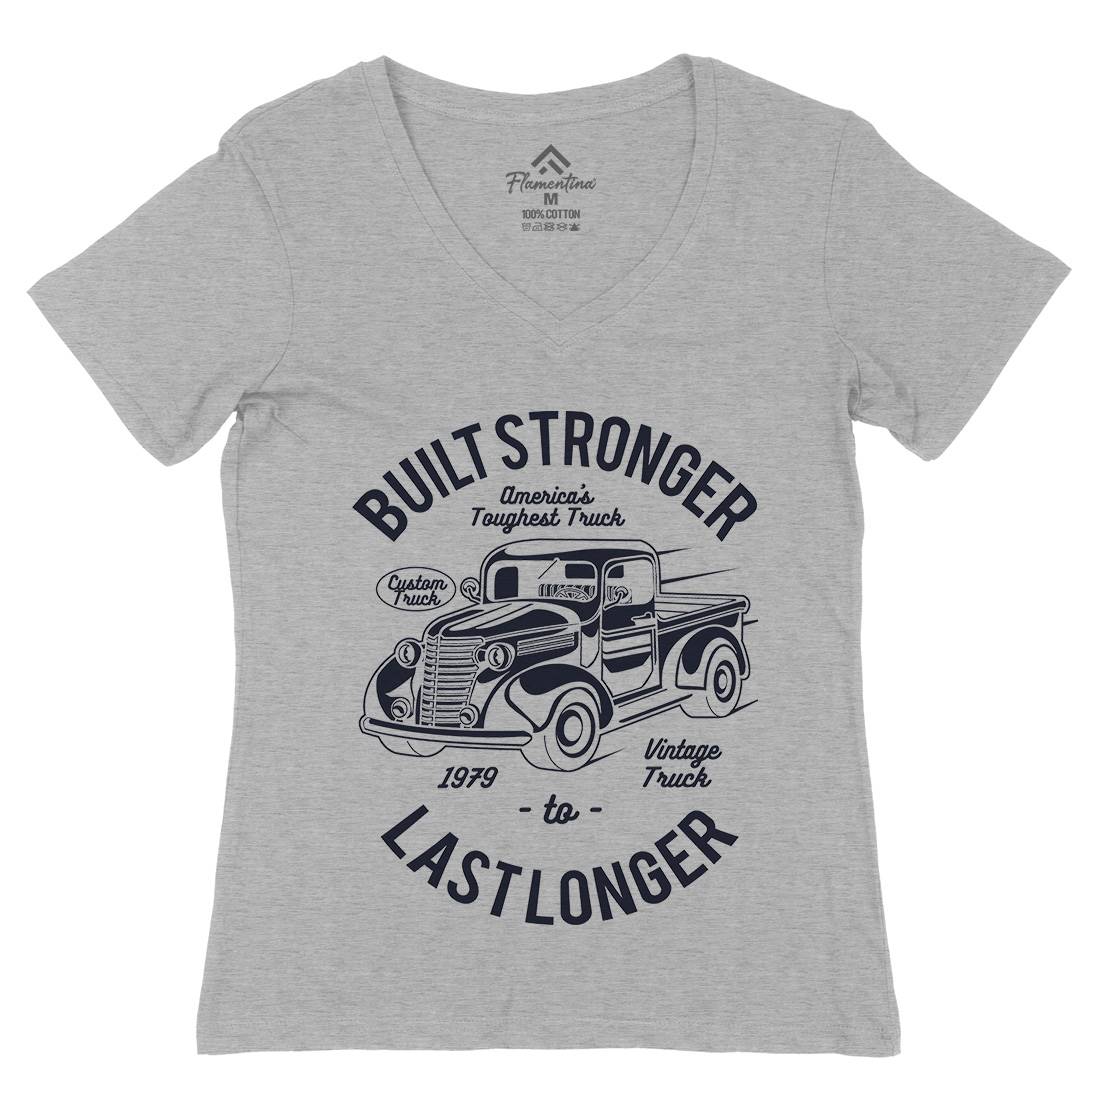 Built Stronger Womens Organic V-Neck T-Shirt Cars A023